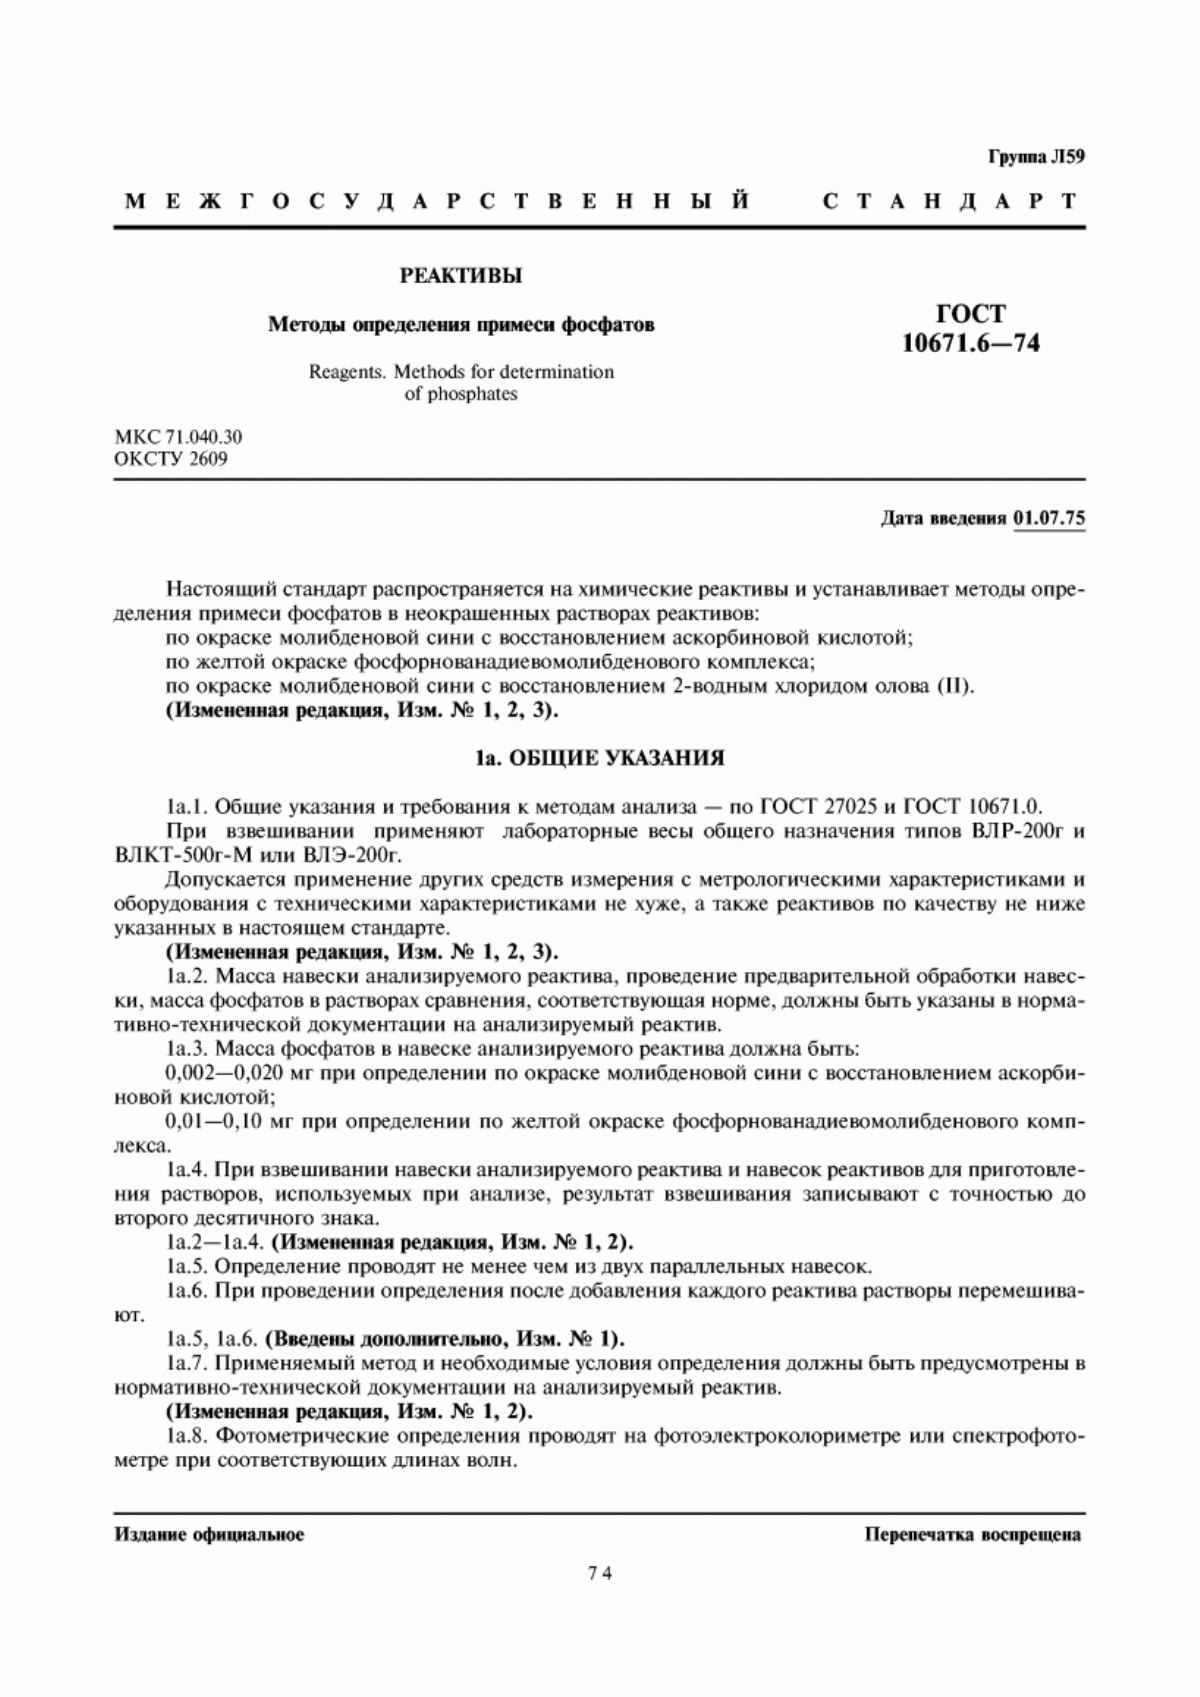 ГОСТ 10671.6-74 Реактивы. Методы определения примеси фосфатов